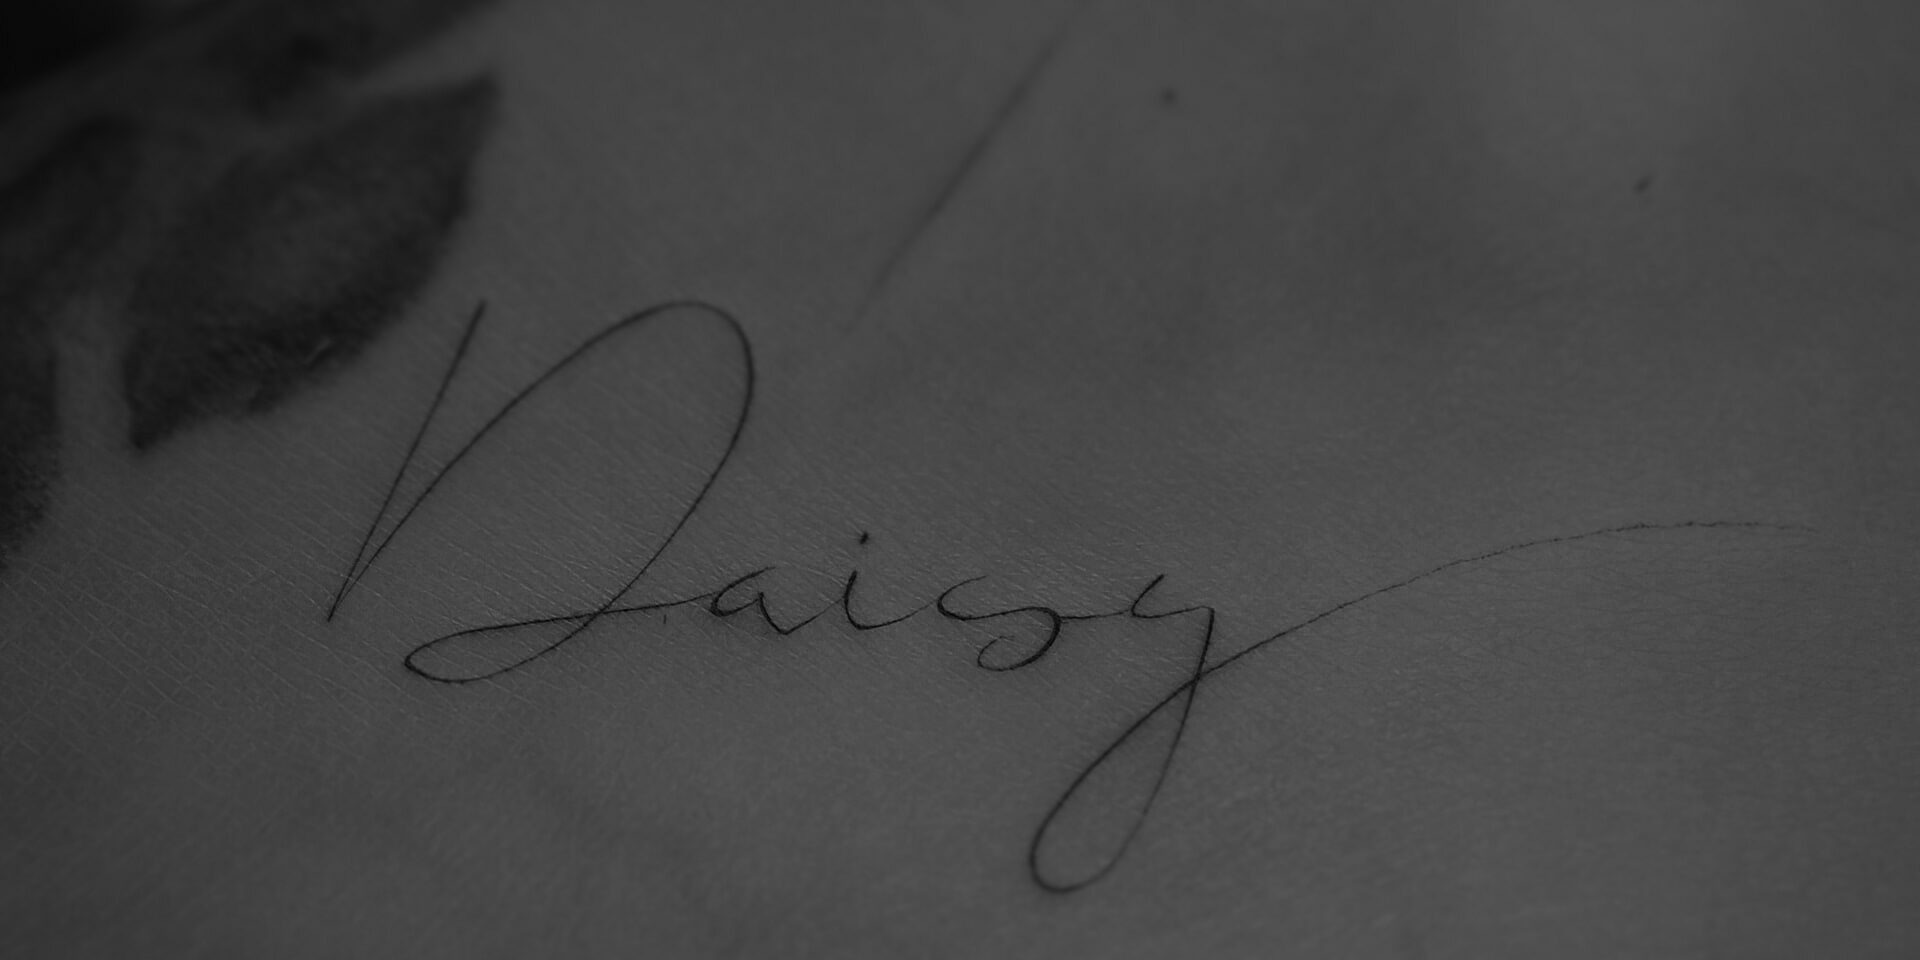 Tatuaż kaligraficzny, imię Daisy